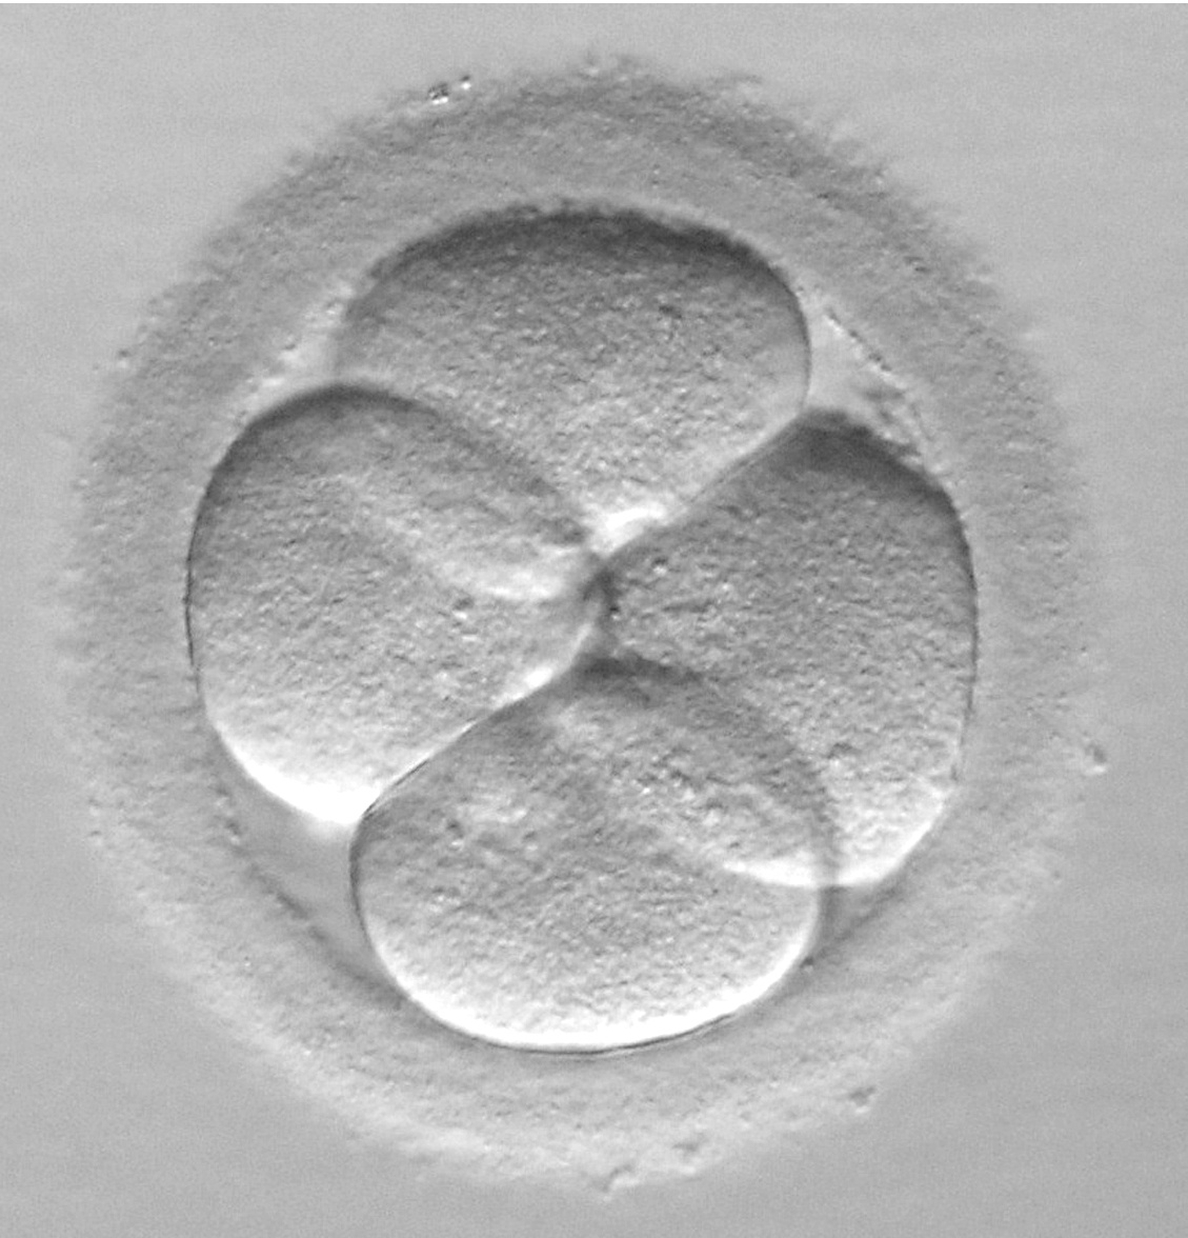 Expertos apuestan por la transferencia de un único embrión para evitar embarazos múltiples no deseados